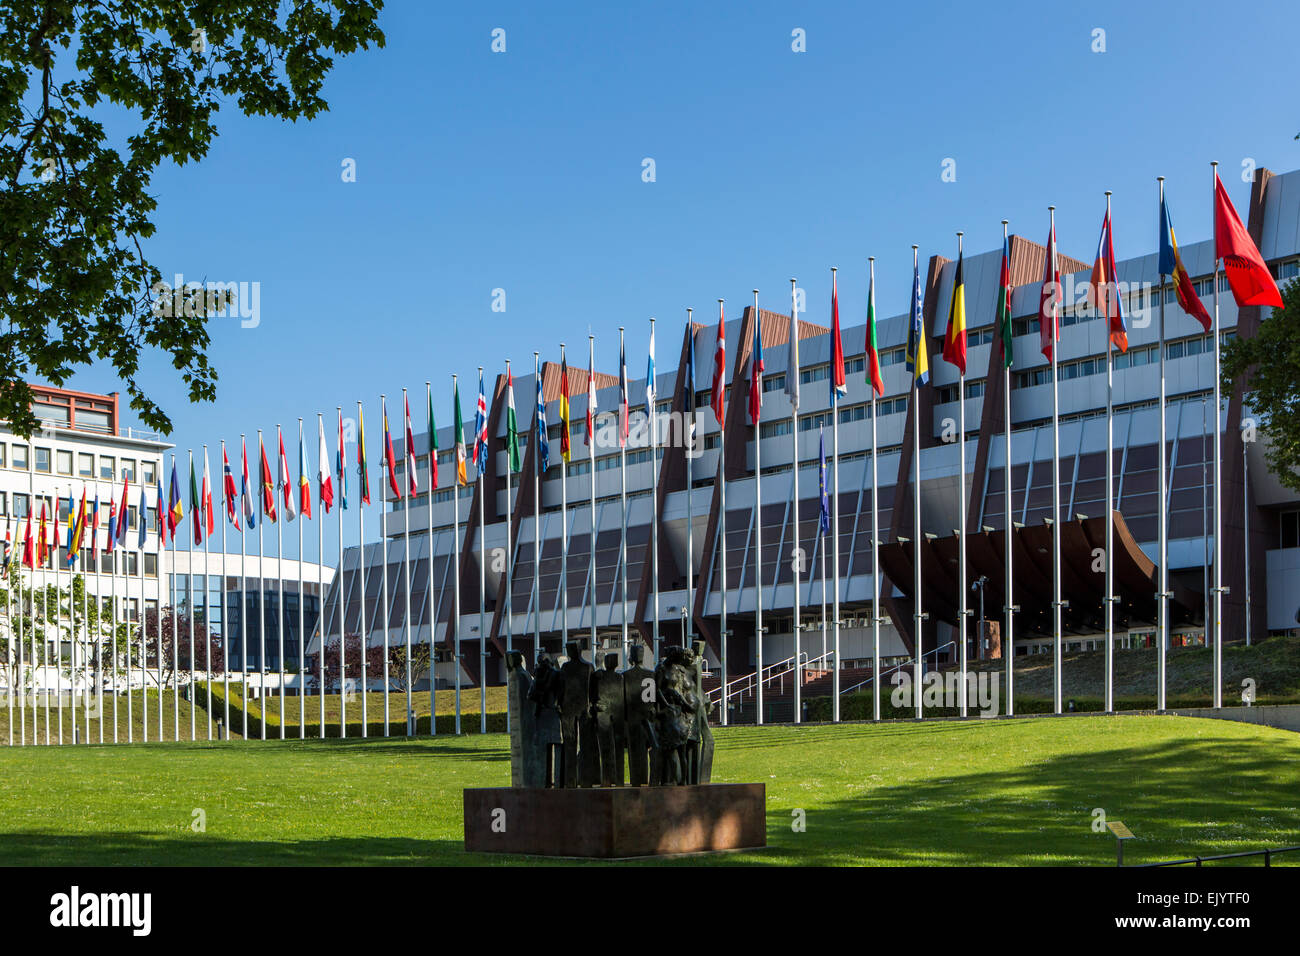 Motifs de l'extérieur et siège du Conseil de l'Europe à Strasbourg, France Banque D'Images